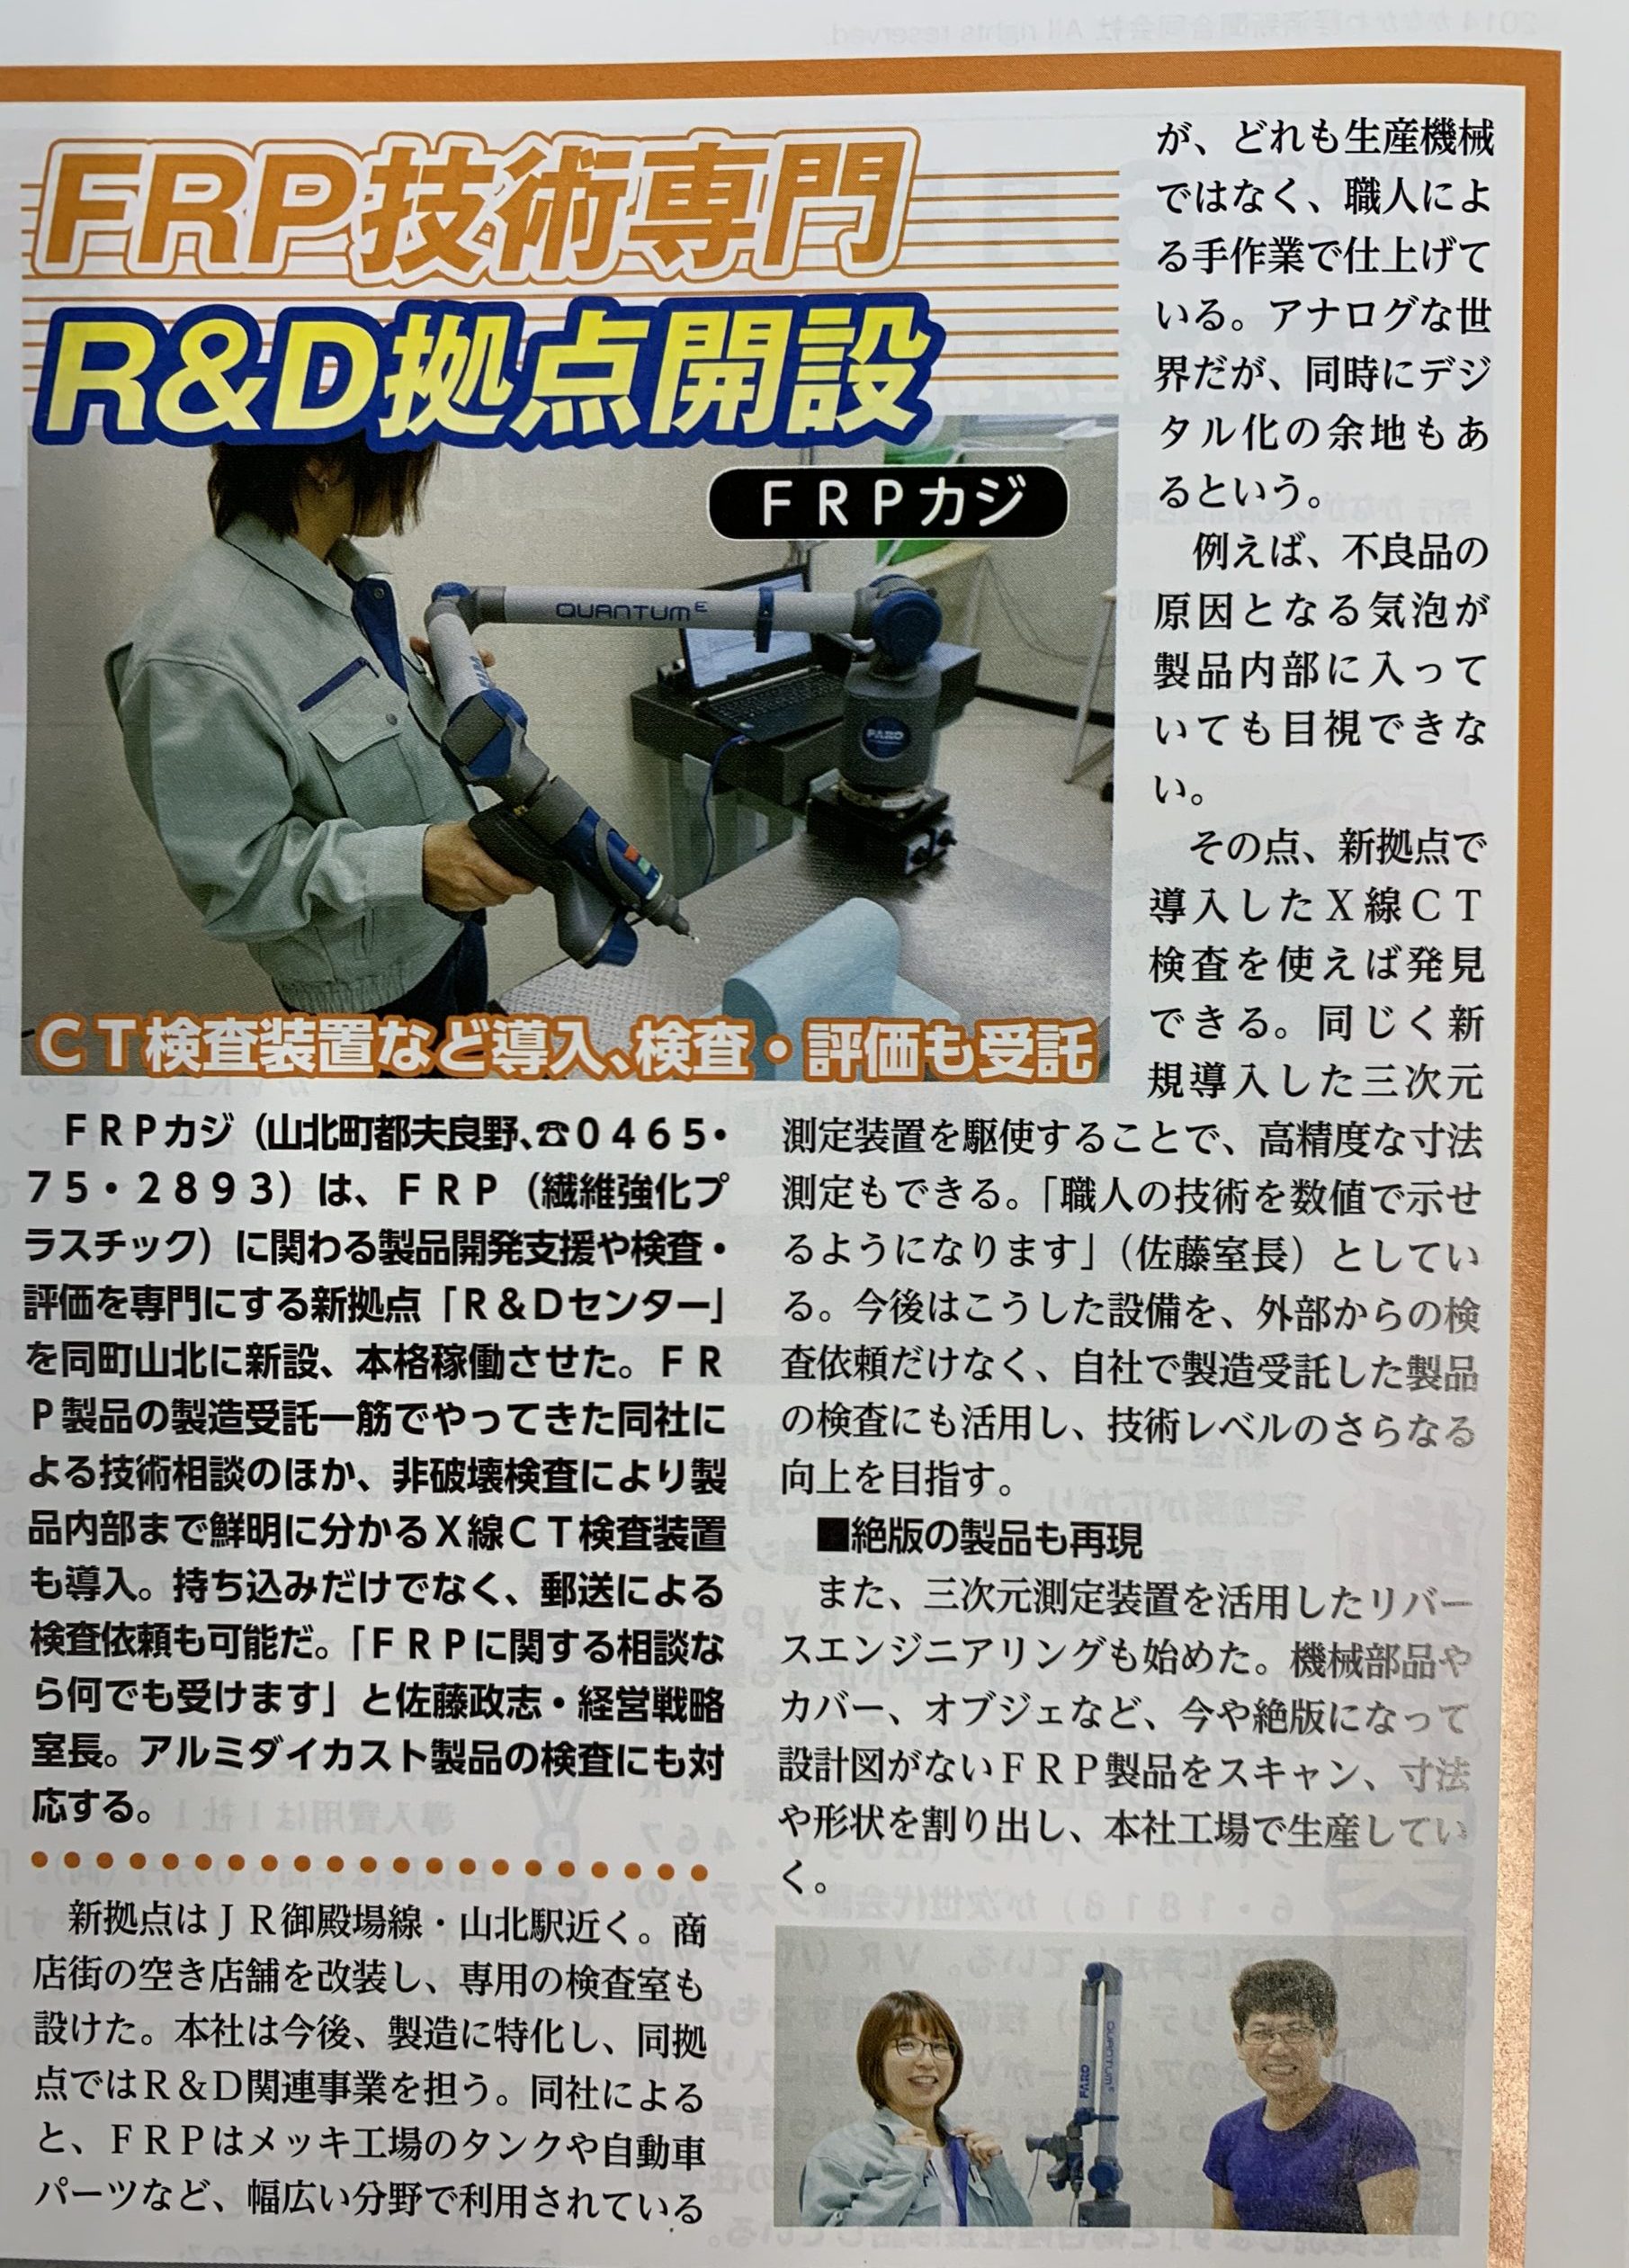 かながわ掲載新聞にてR&Dセンター掲載